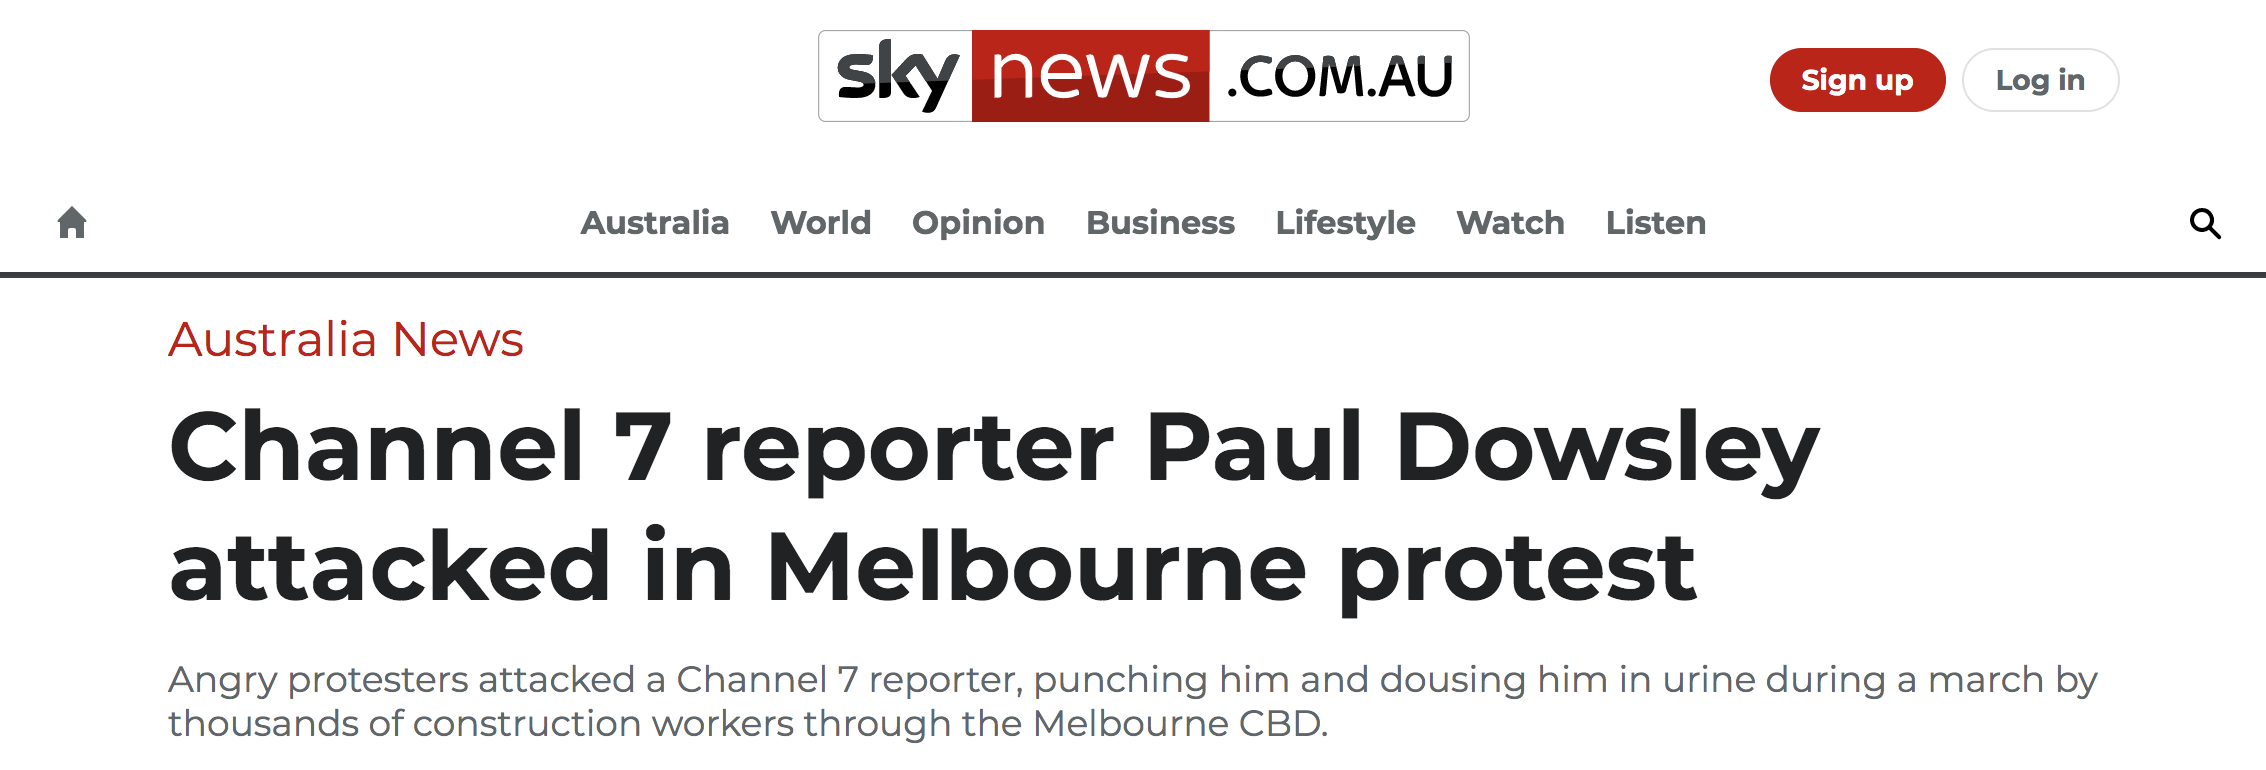 澳大利亚“天空新闻网”报道截图：“第七频道” 记者保罗·道斯利在墨尔本抗议中遭到攻击